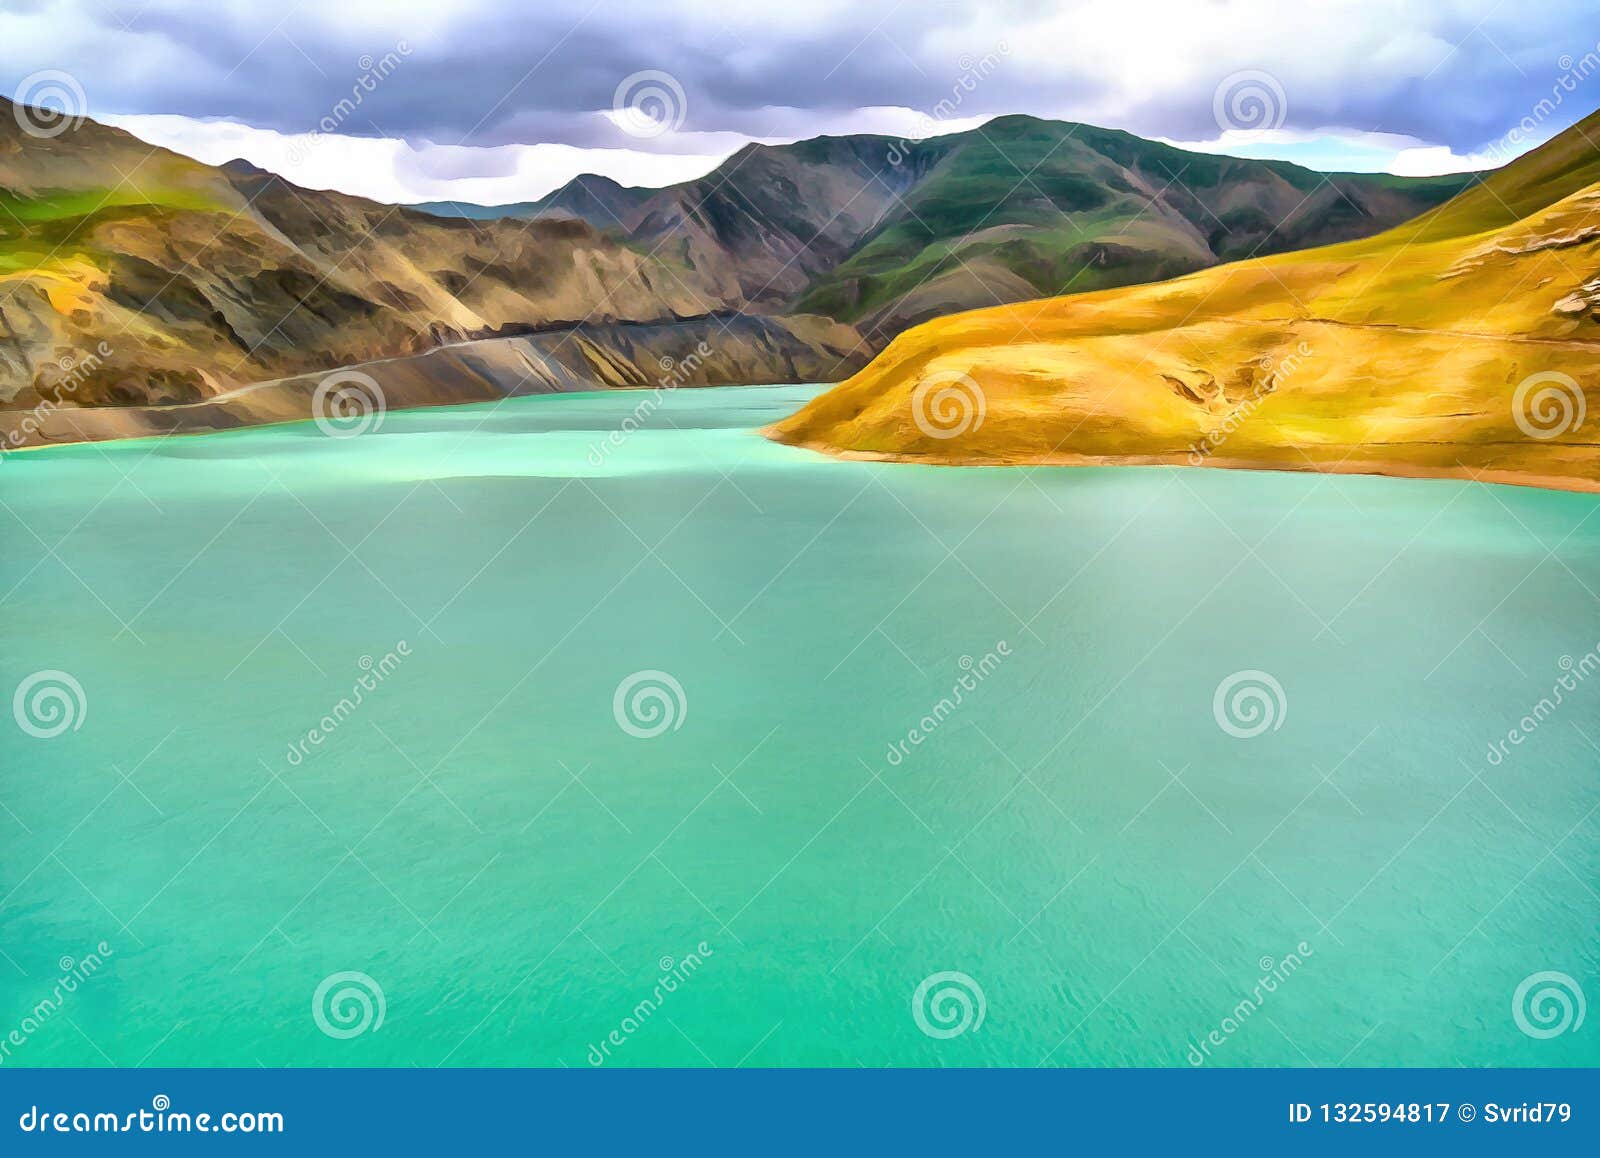 paisagens em aquarela  Aquarela, Desenhos paisagens, Montanha desenho